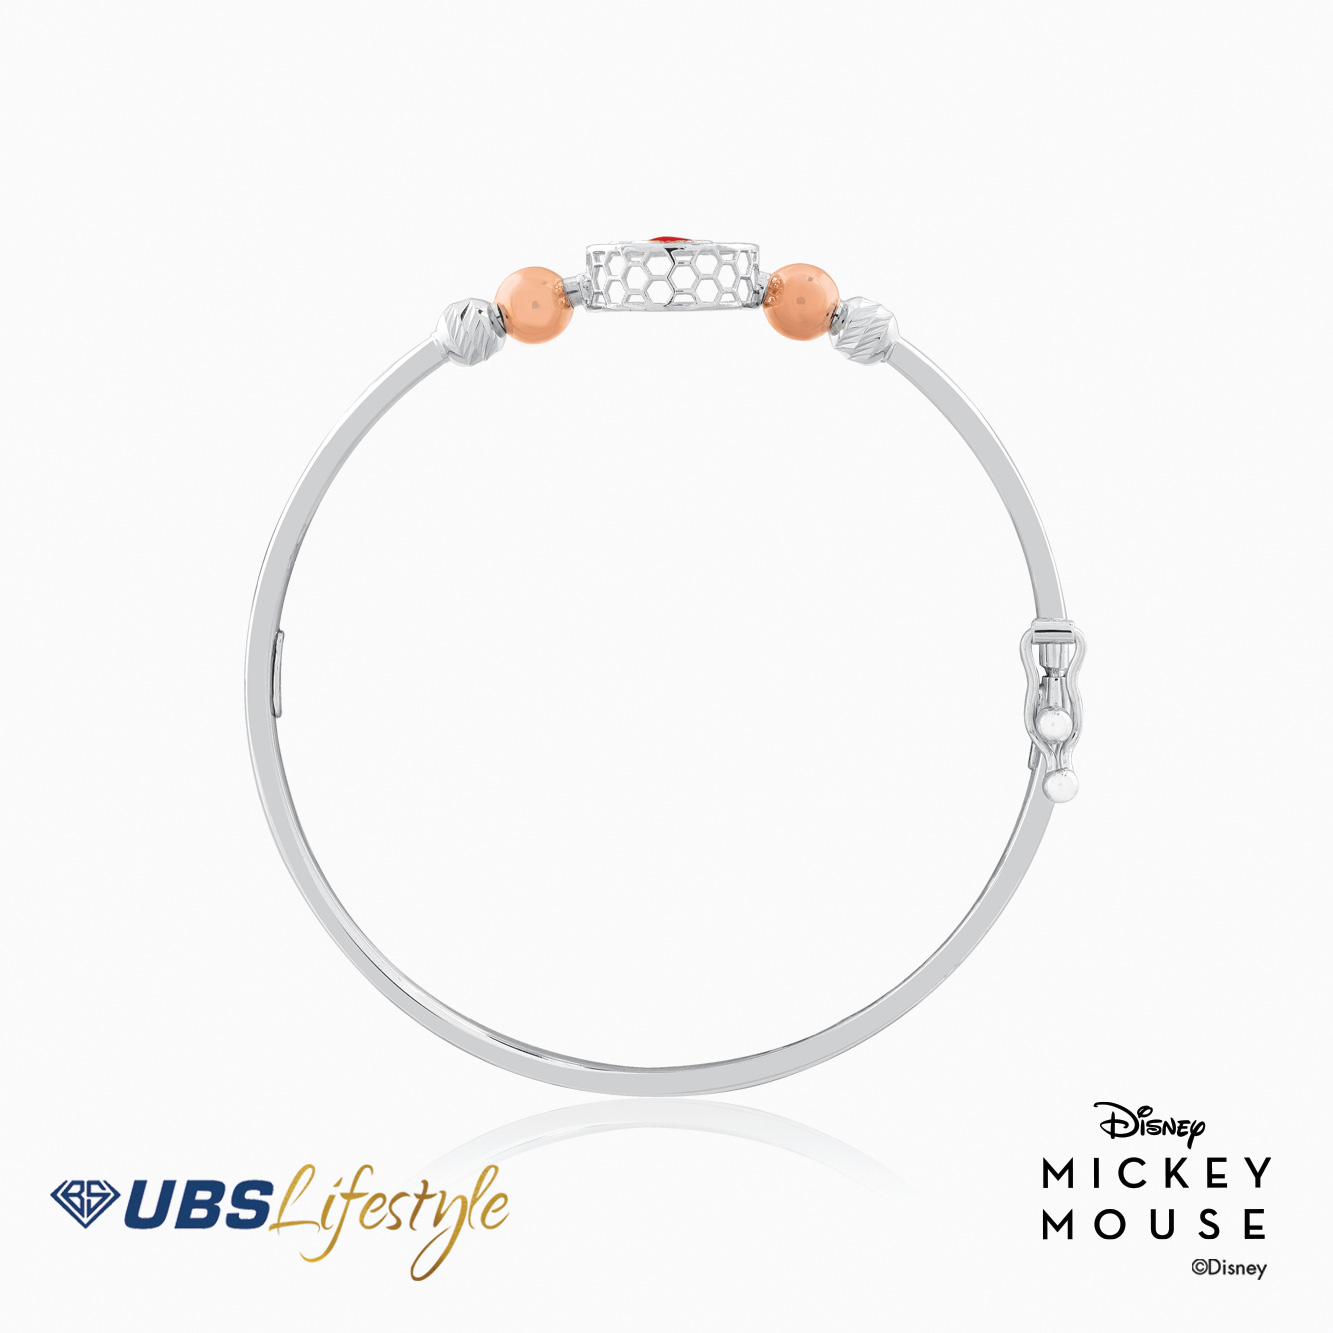 UBS Gelang Emas Bayi Disney Mickey Mouse - Vgy0097- 17K